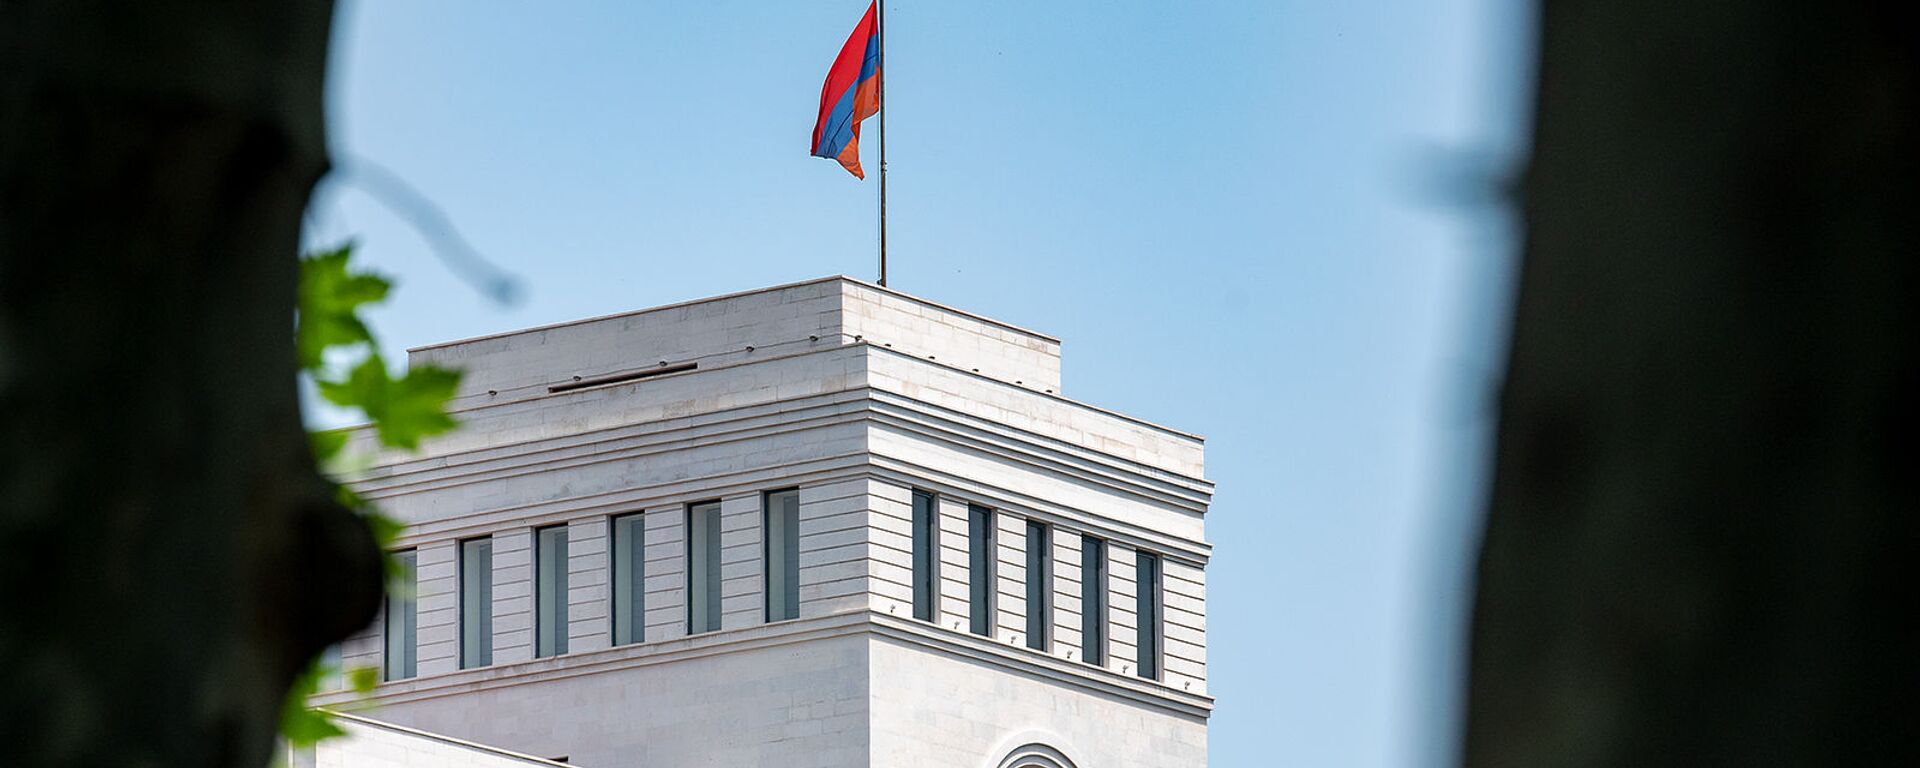 Здание Министерства иностранных дел Армении - Sputnik Արմենիա, 1920, 27.02.2021